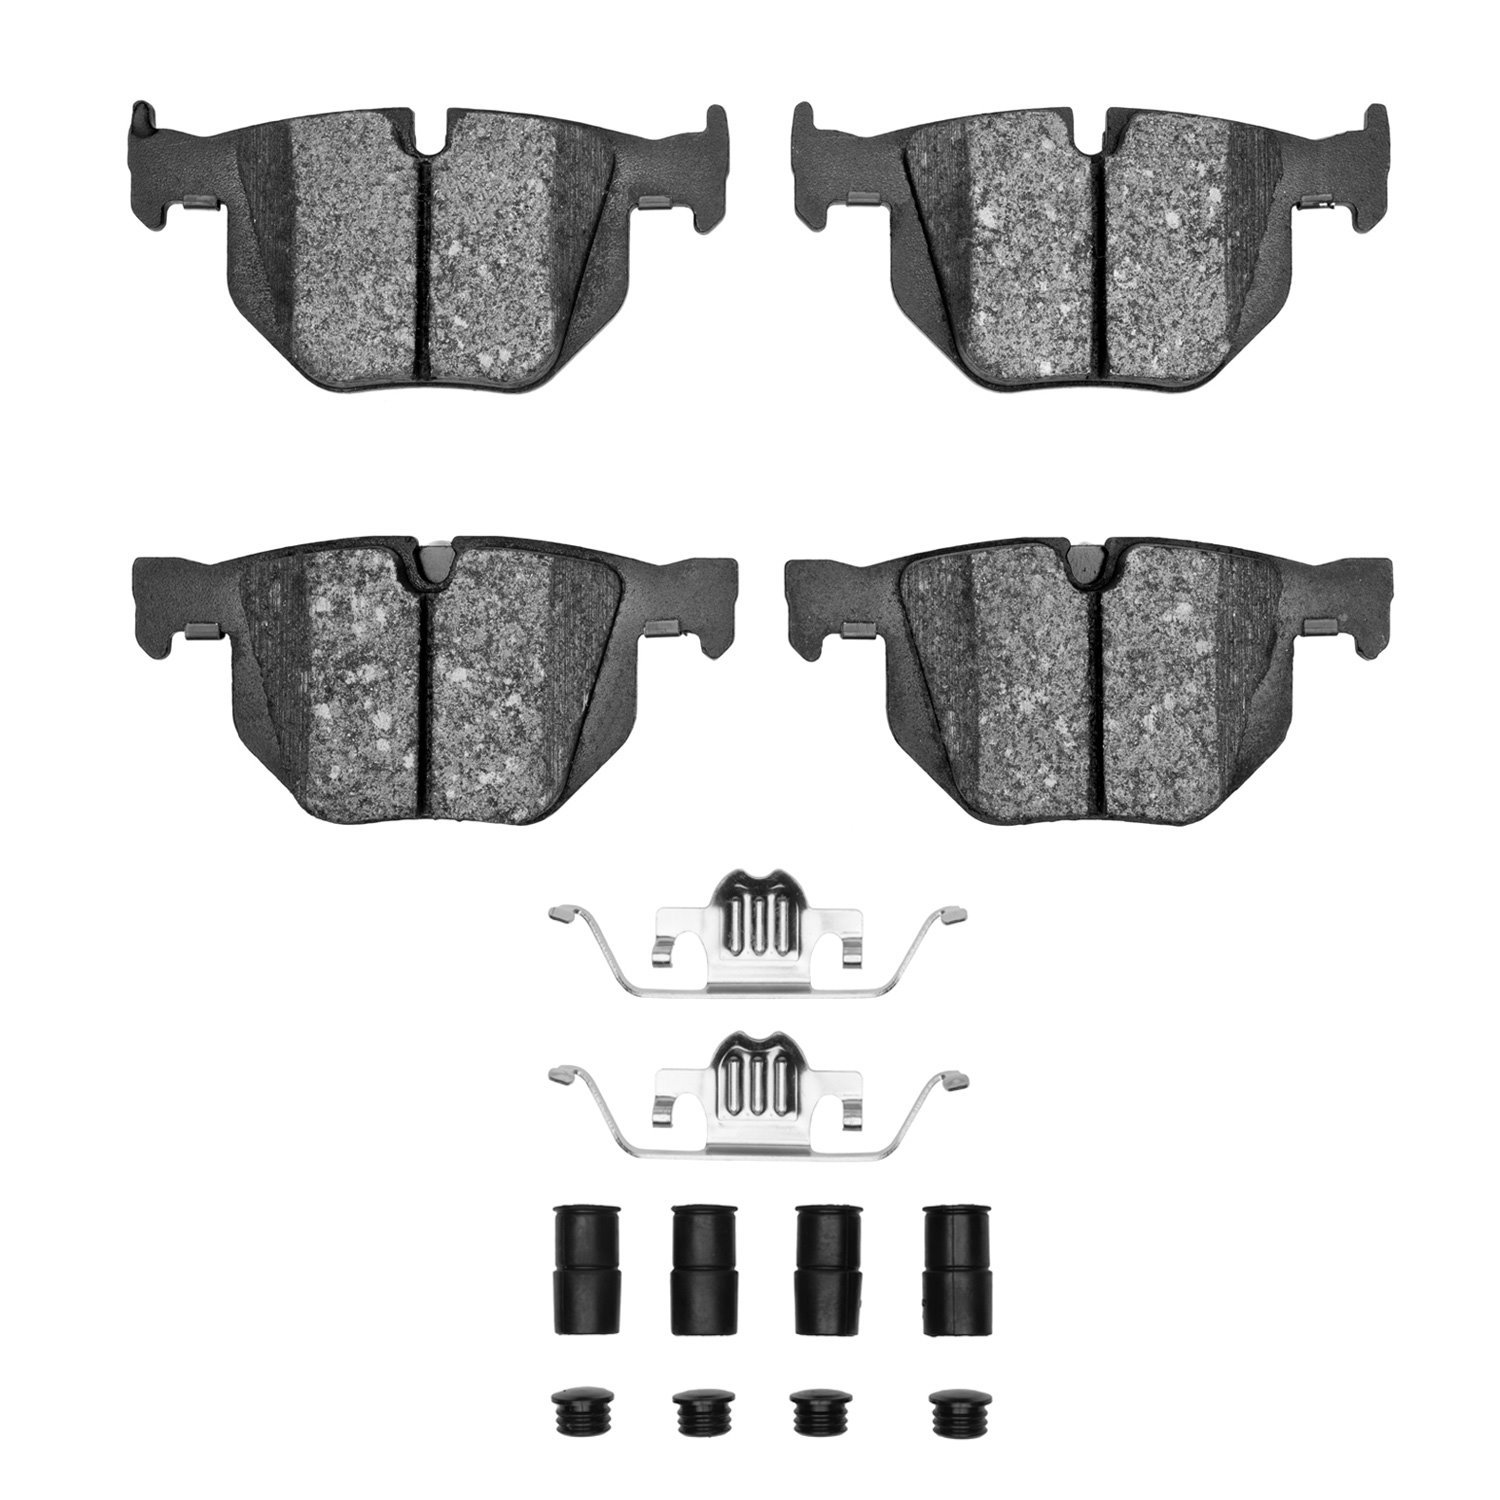 1311-1042-01 3000-Series Semi-Metallic Brake Pads & Hardware Kit, 2007-2019 BMW, Position: Rear